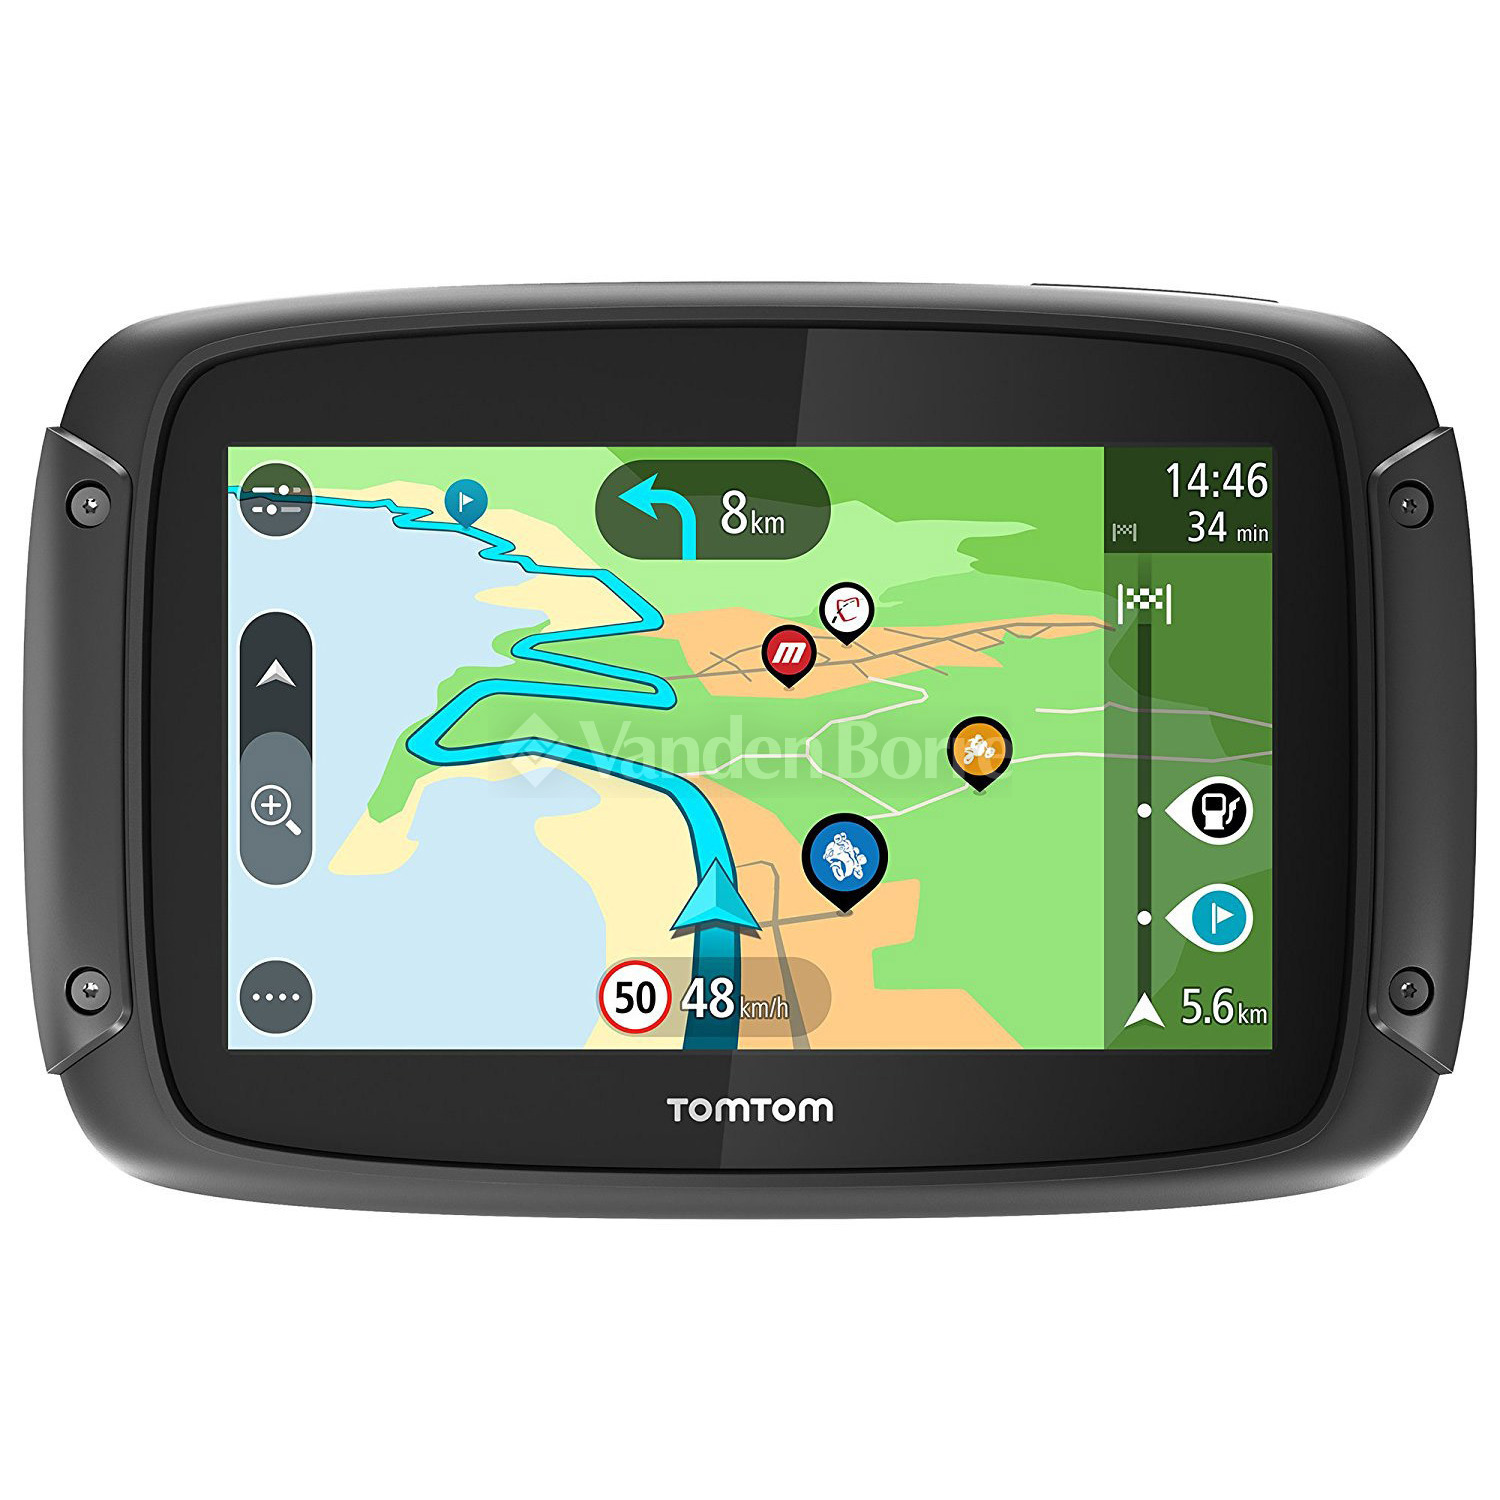 GPS RIDER 500 Vanden Borre